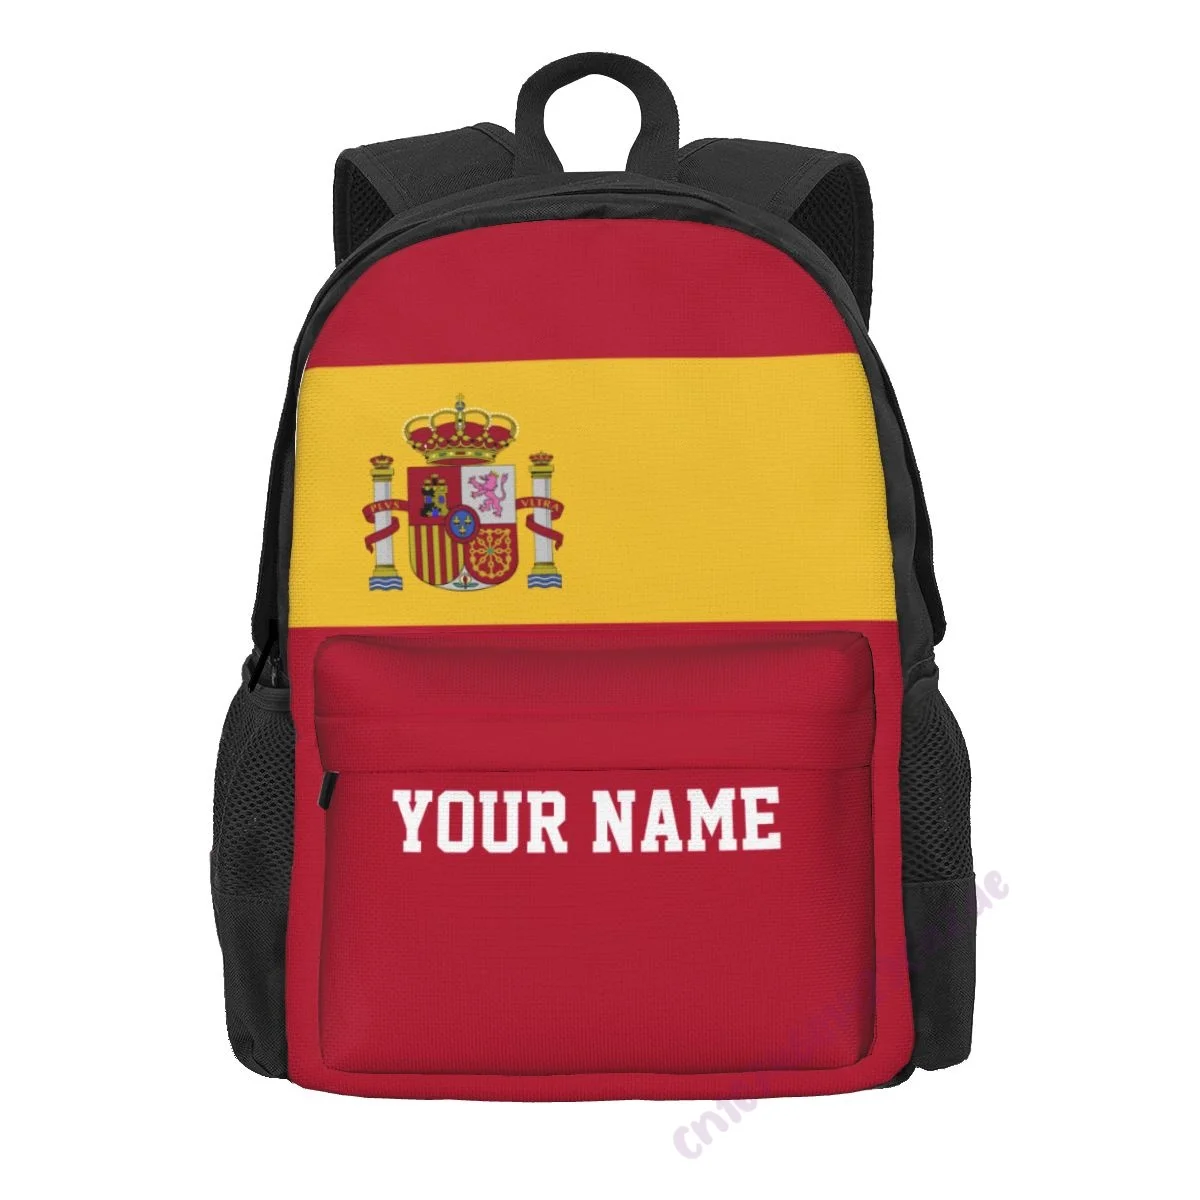 Пользовательское название Рюкзак из полиэстера с флагом Испании для мужчин и женщин, дорожная сумка, Повседневная Студенческая походная сумка, кемпинг - 1